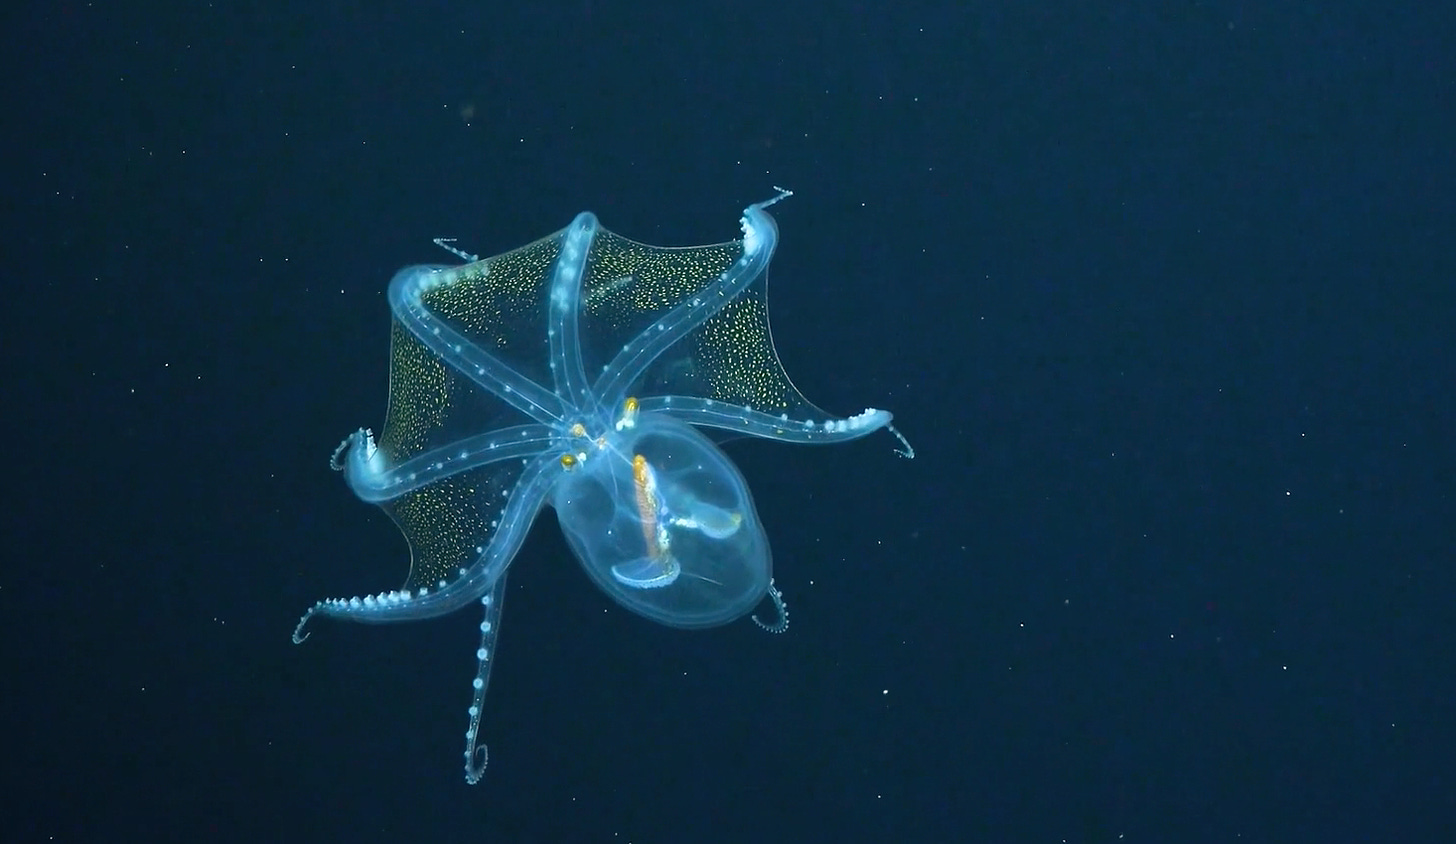 A glass octopus